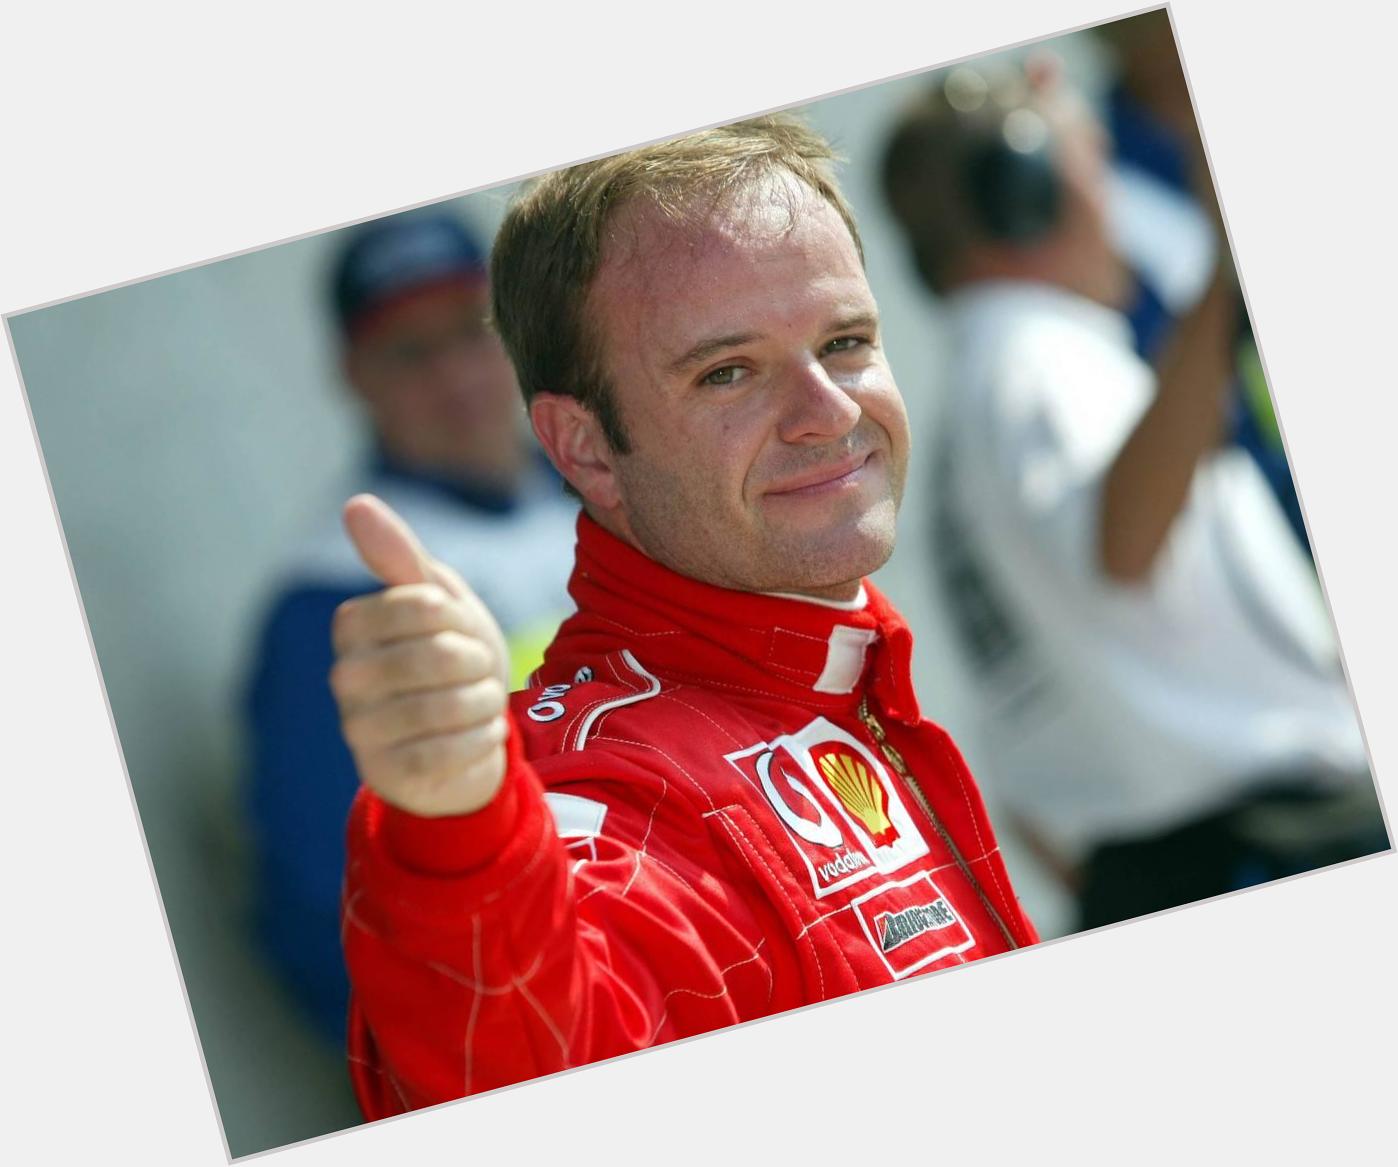 El día de hoy celebremos el cumpleaños de Rubens Barrichello Happy Birthday 45 years 